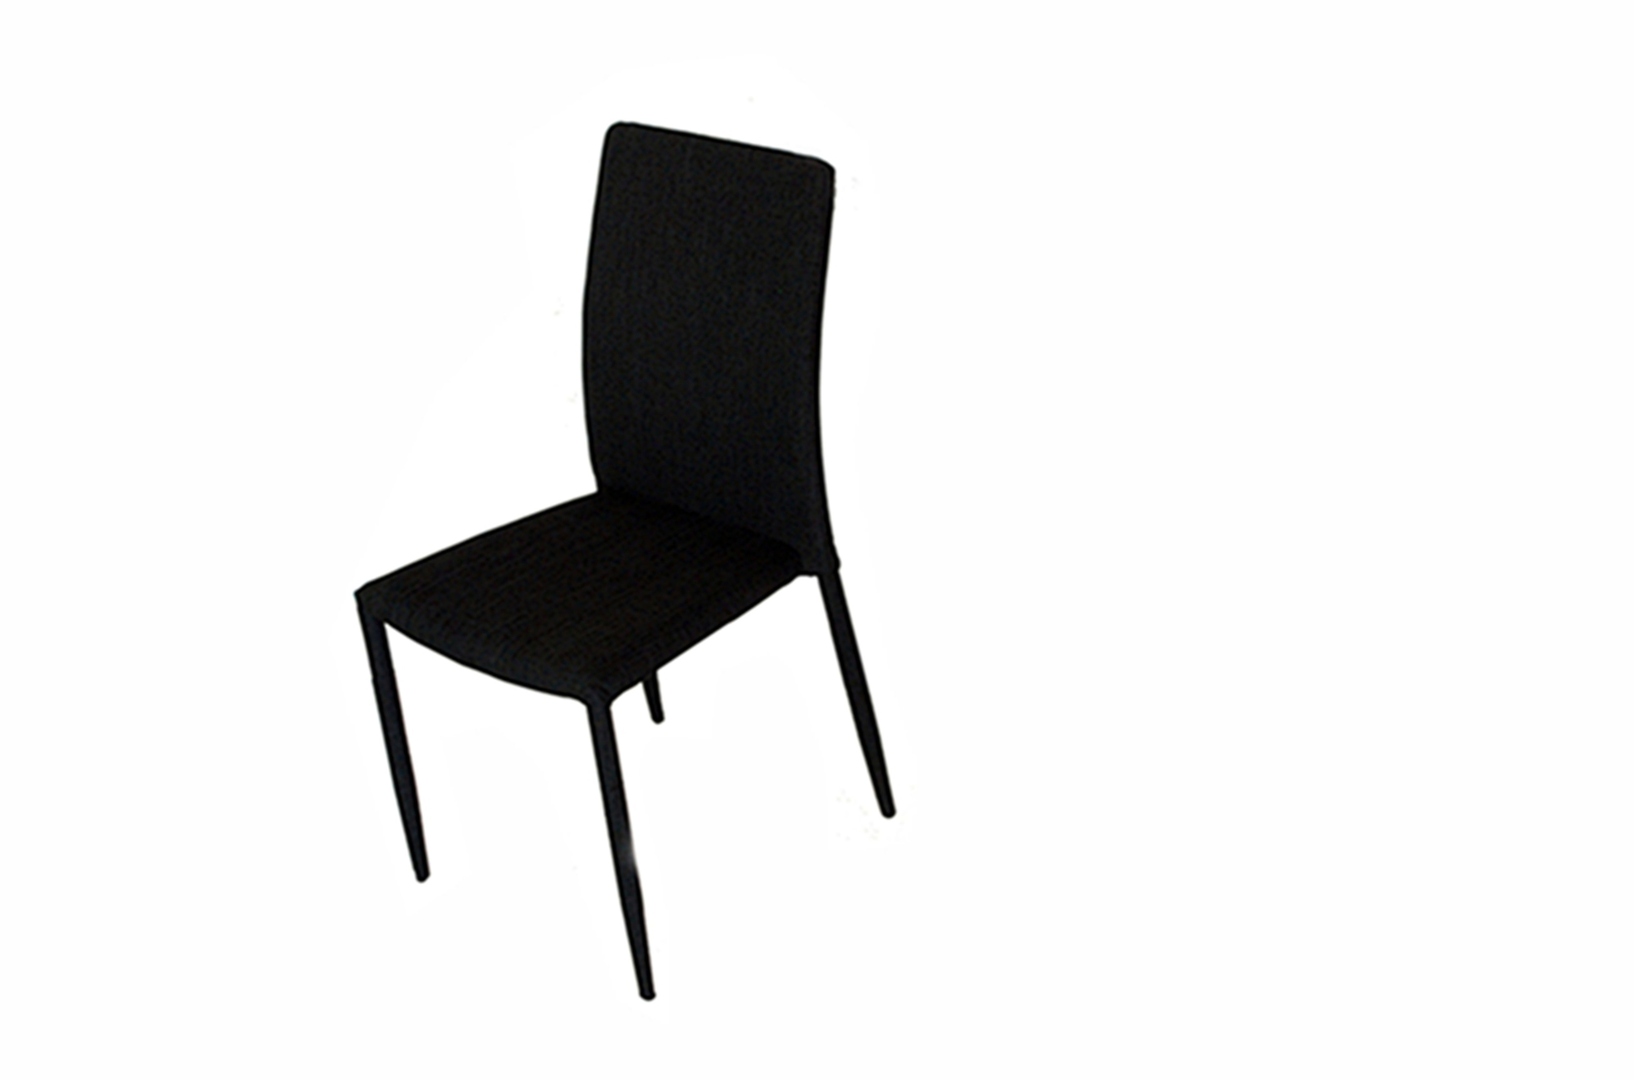 Chaise de salle à manger design métal & tissu coloris noir (lot de 4) Morino